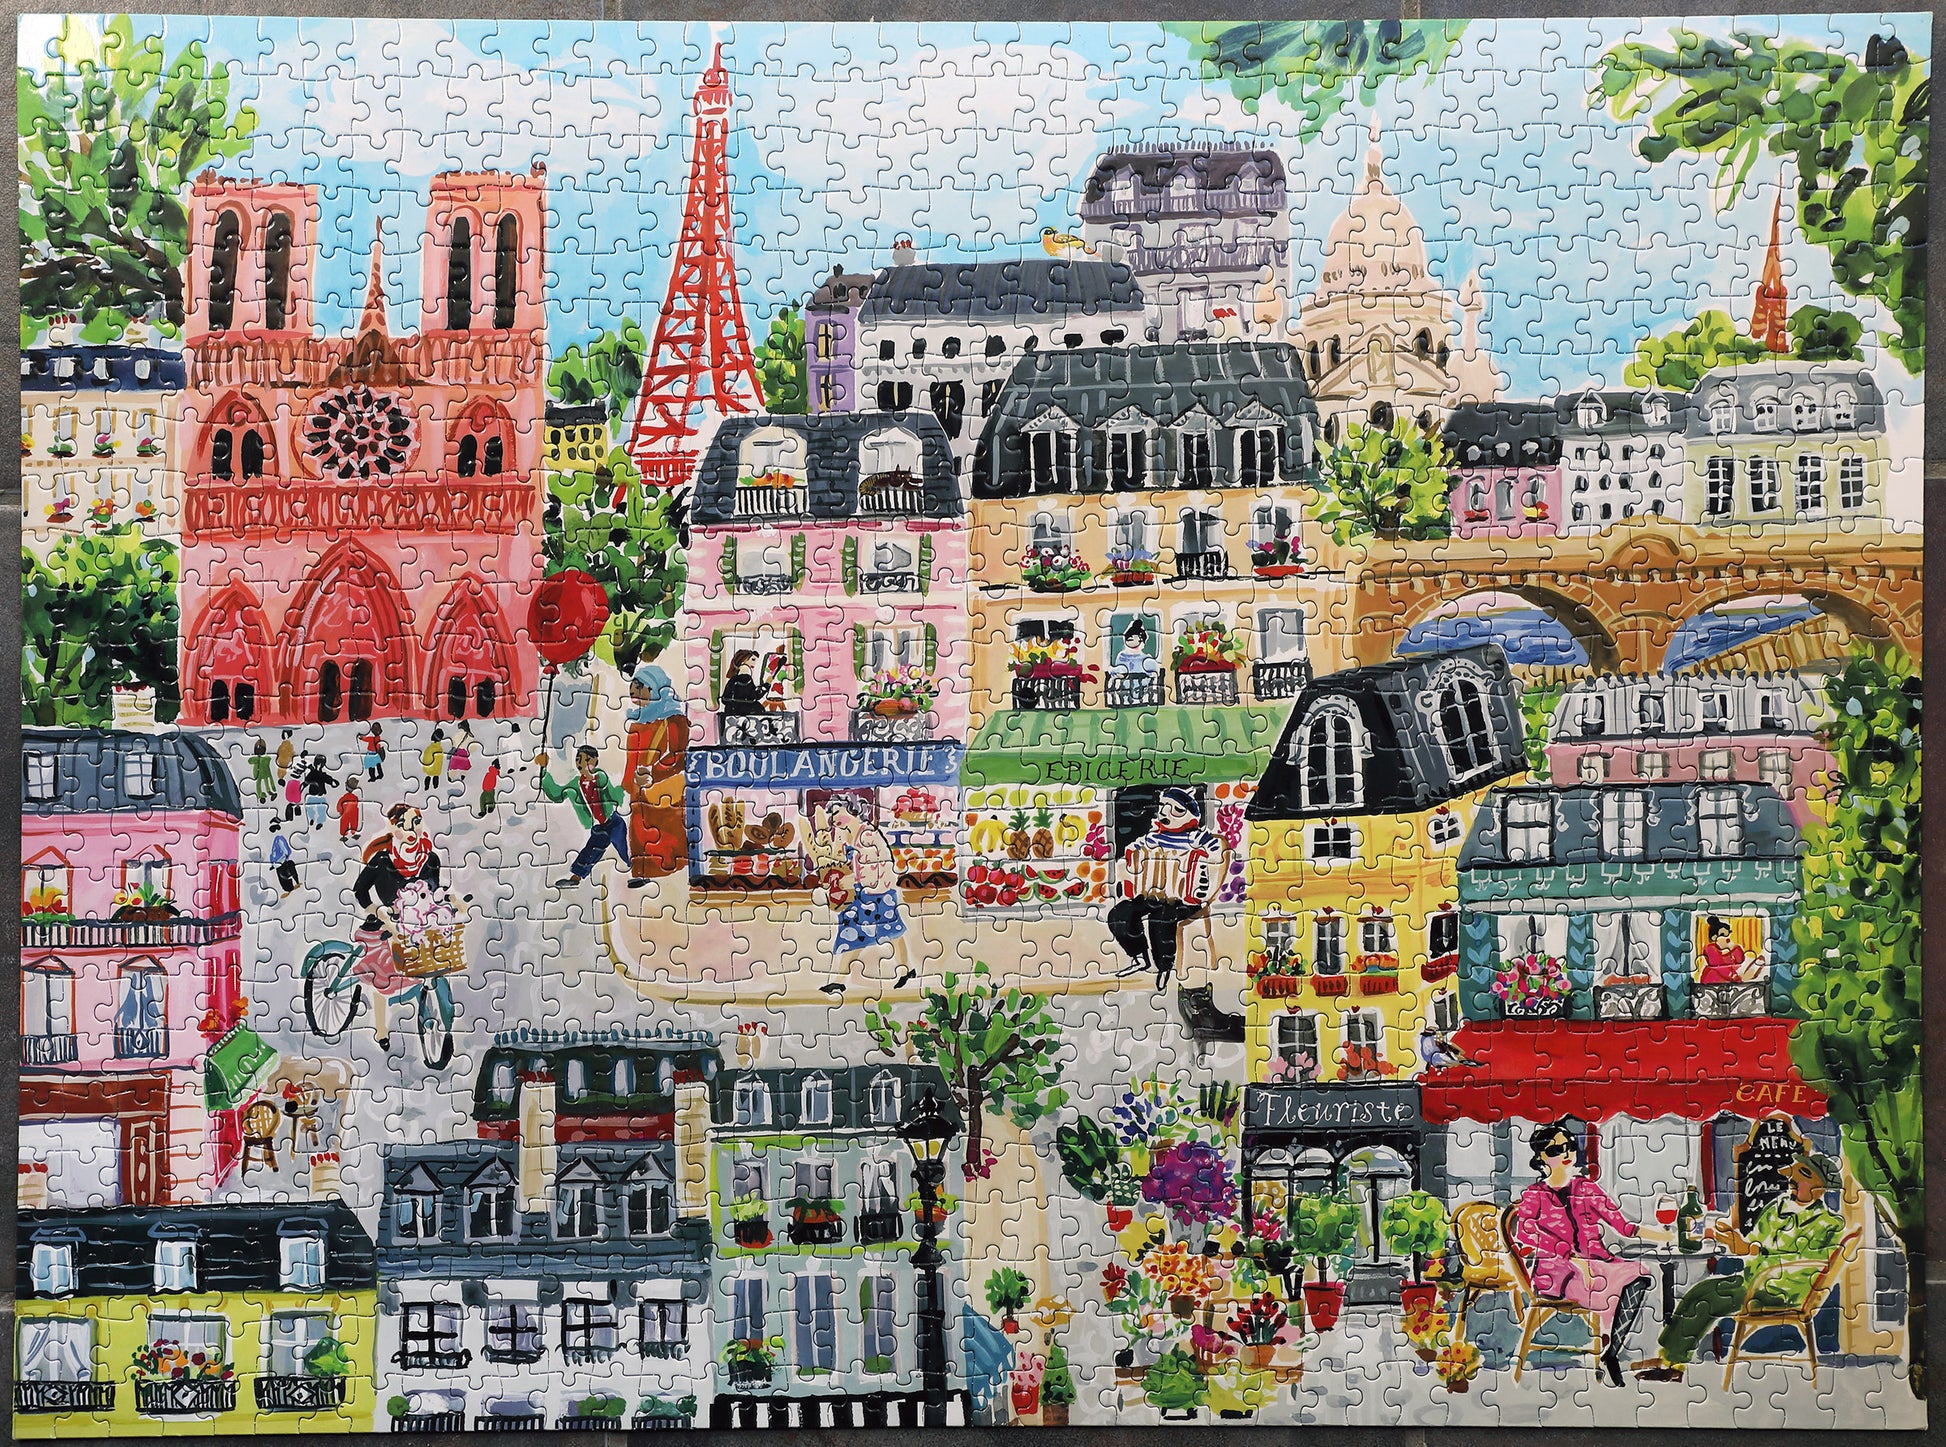 Ravensburger (15736) - The City of Paris - 1000 pieces puzzle